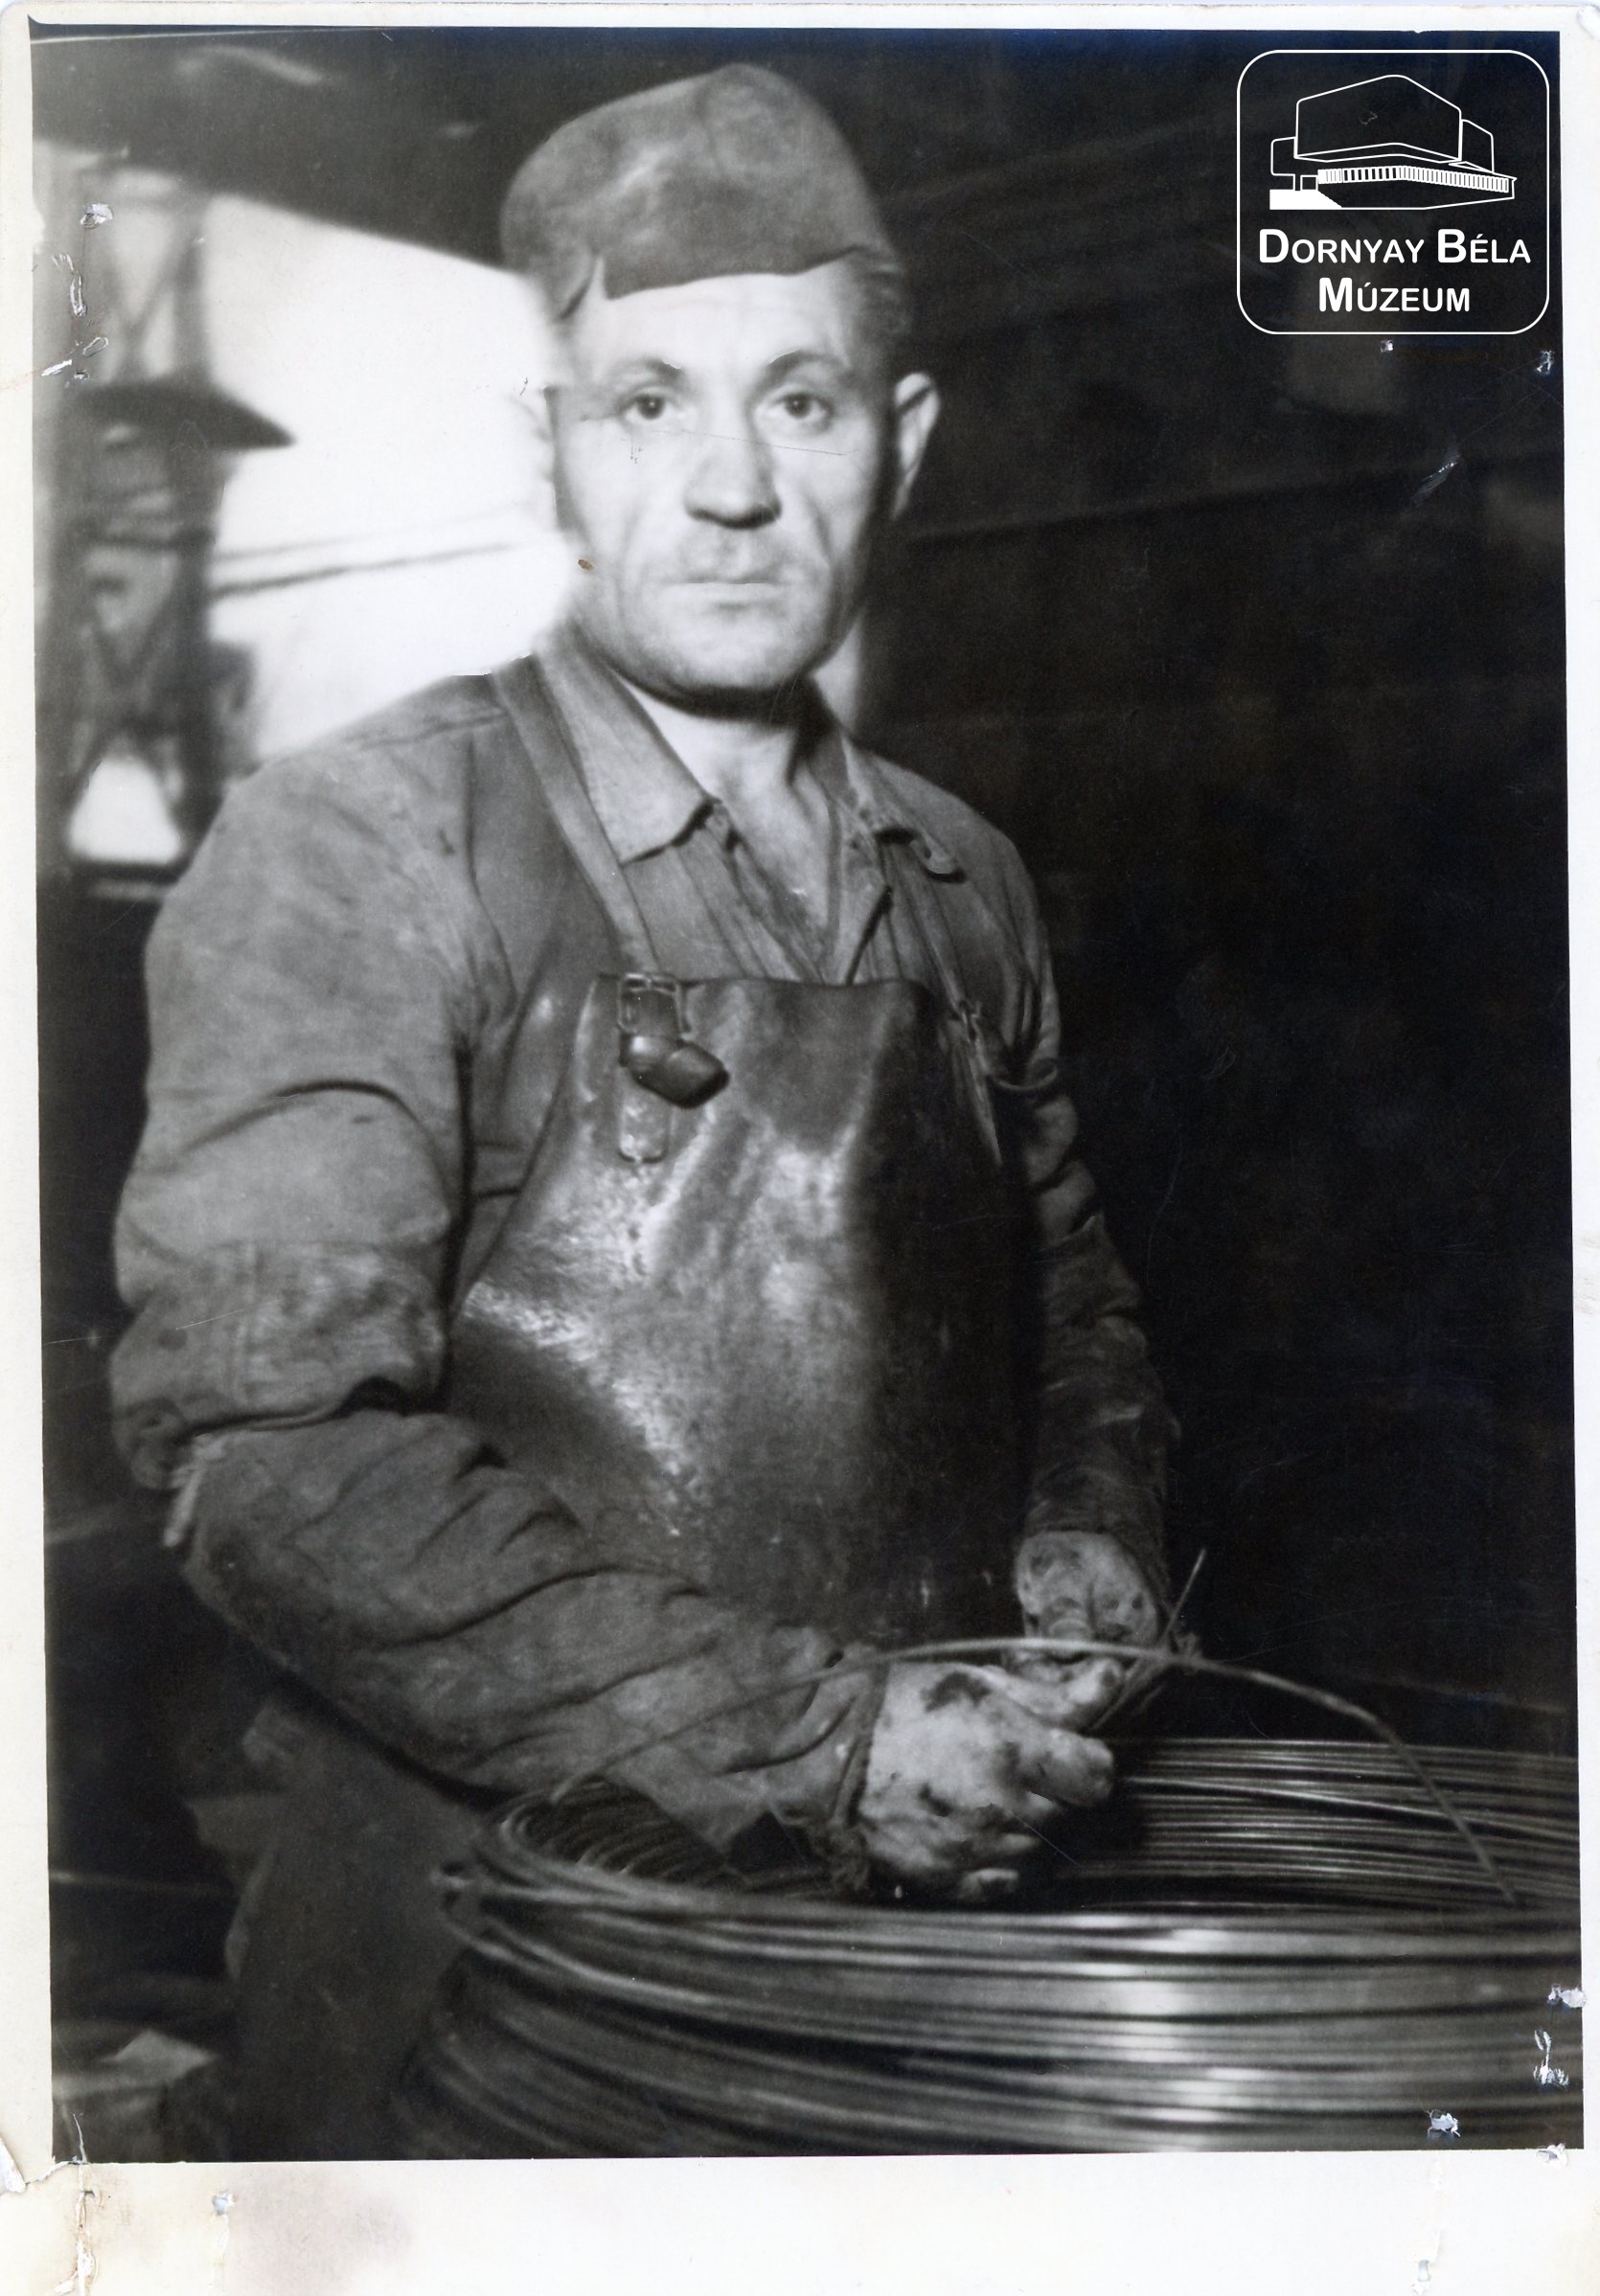 Földi Ferenc acélgyári munkás (Dornyay Béla Múzeum, Salgótarján CC BY-NC-SA)